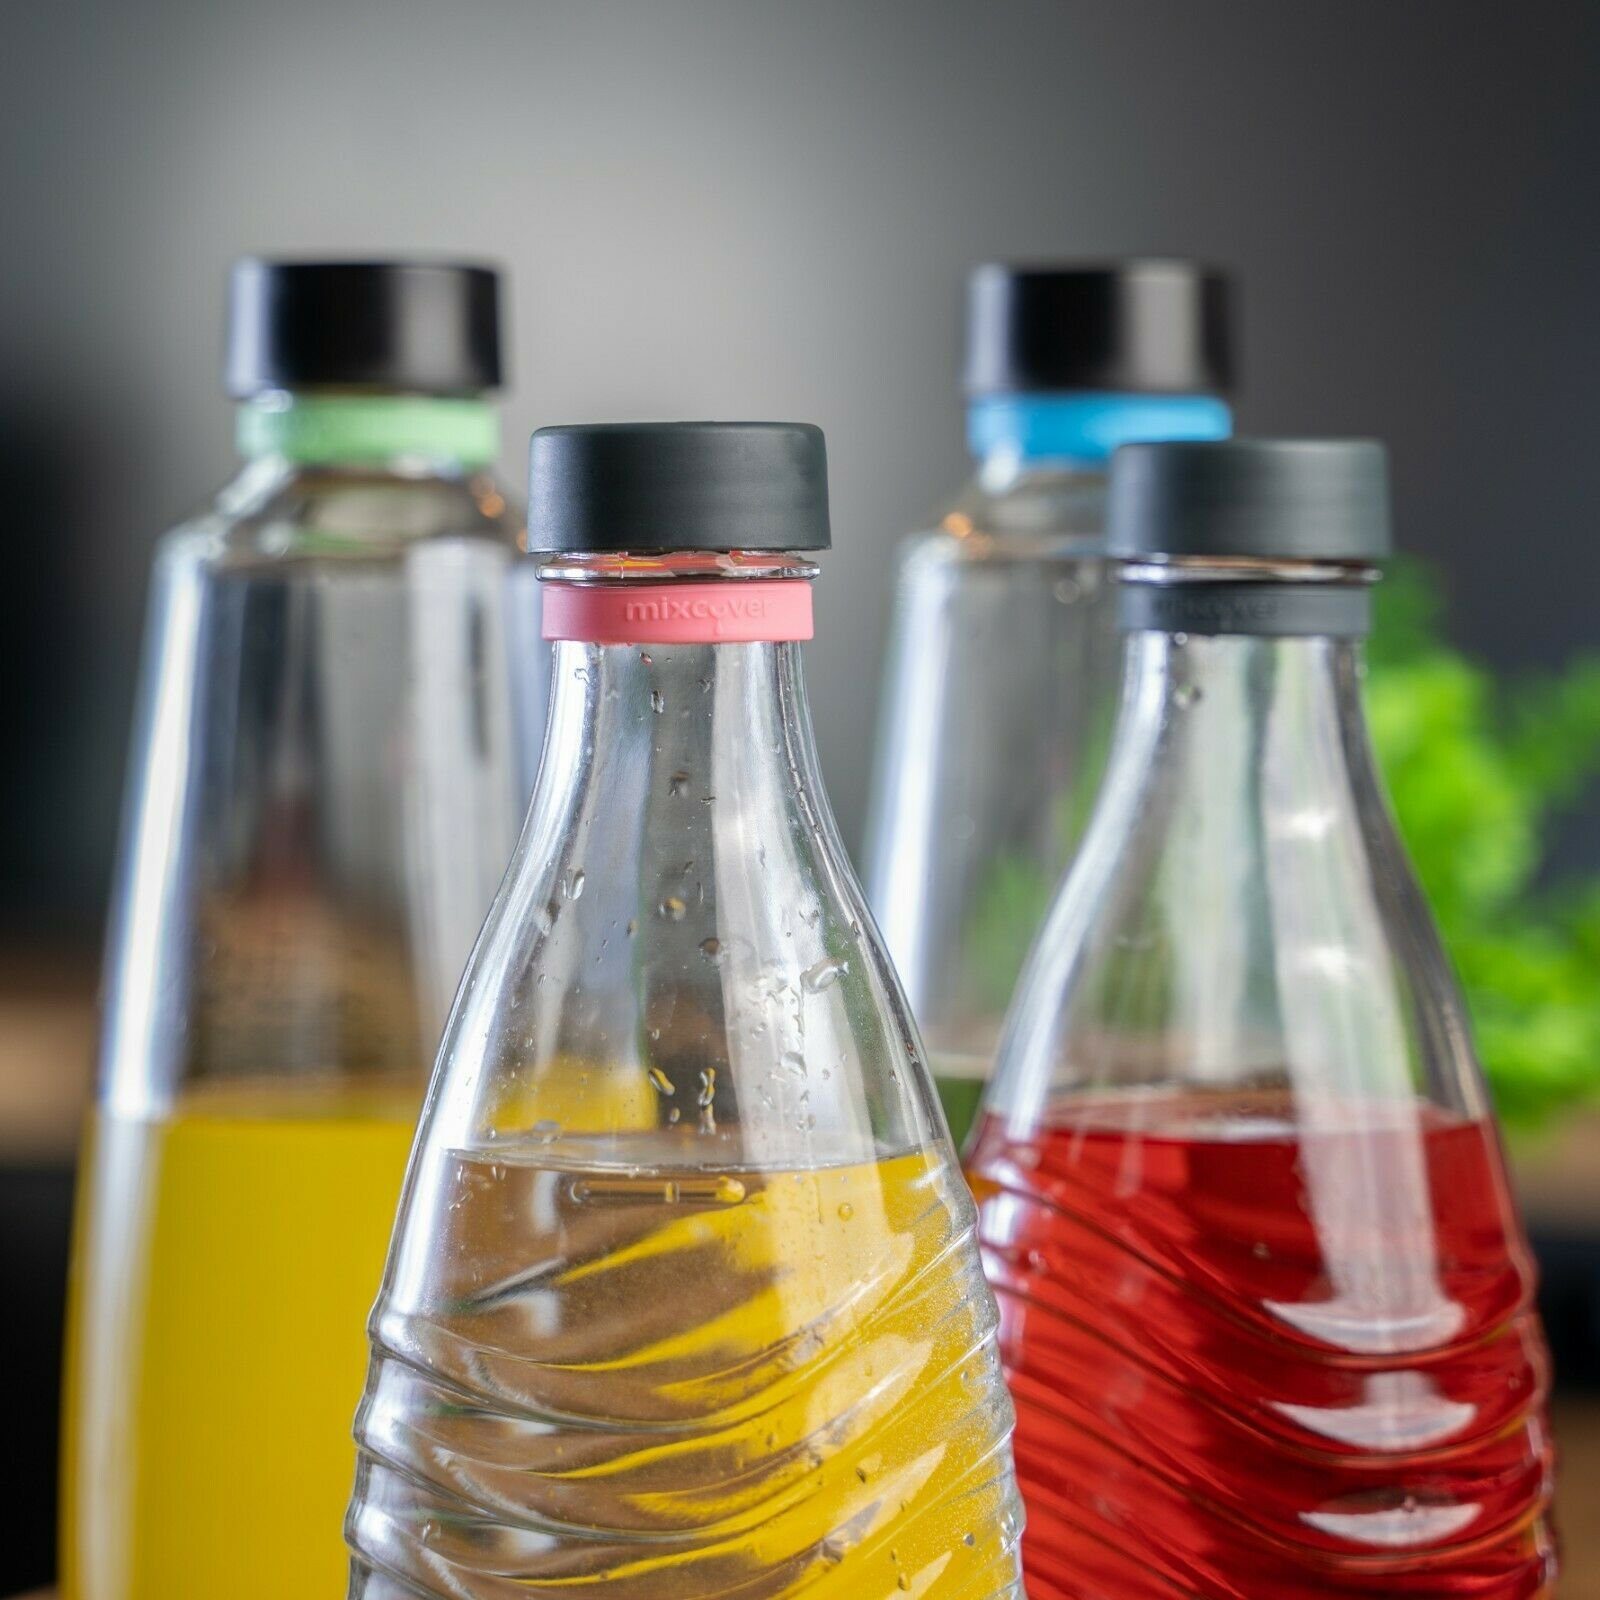 Mixcover Wassersprudler Flasche mixcover Silikonring zum Markieren von Trinkflaschen oder SodaStream Flaschen